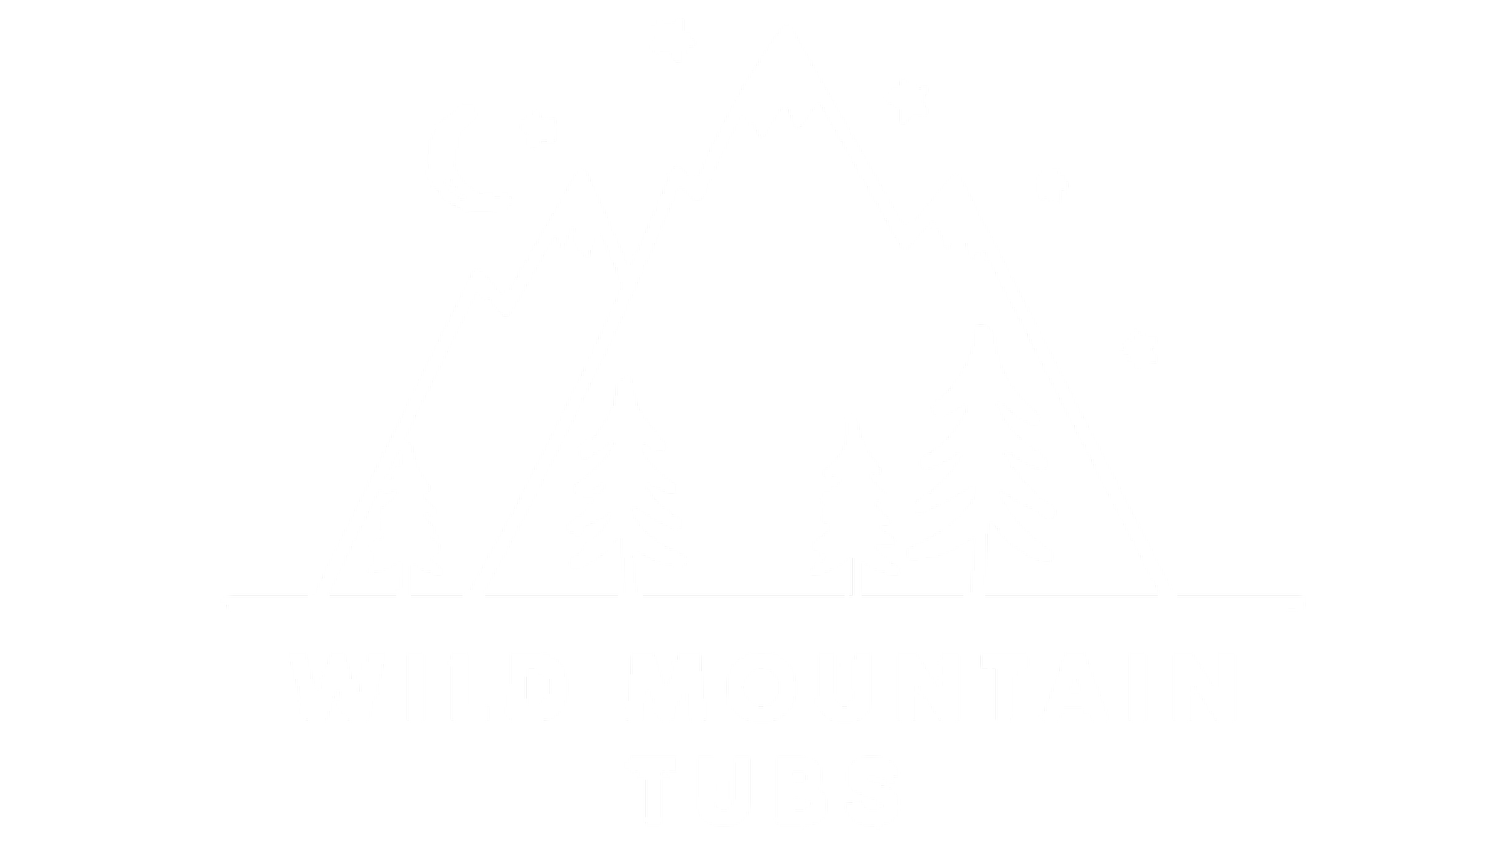 WILD MOUNTAIN TUBS